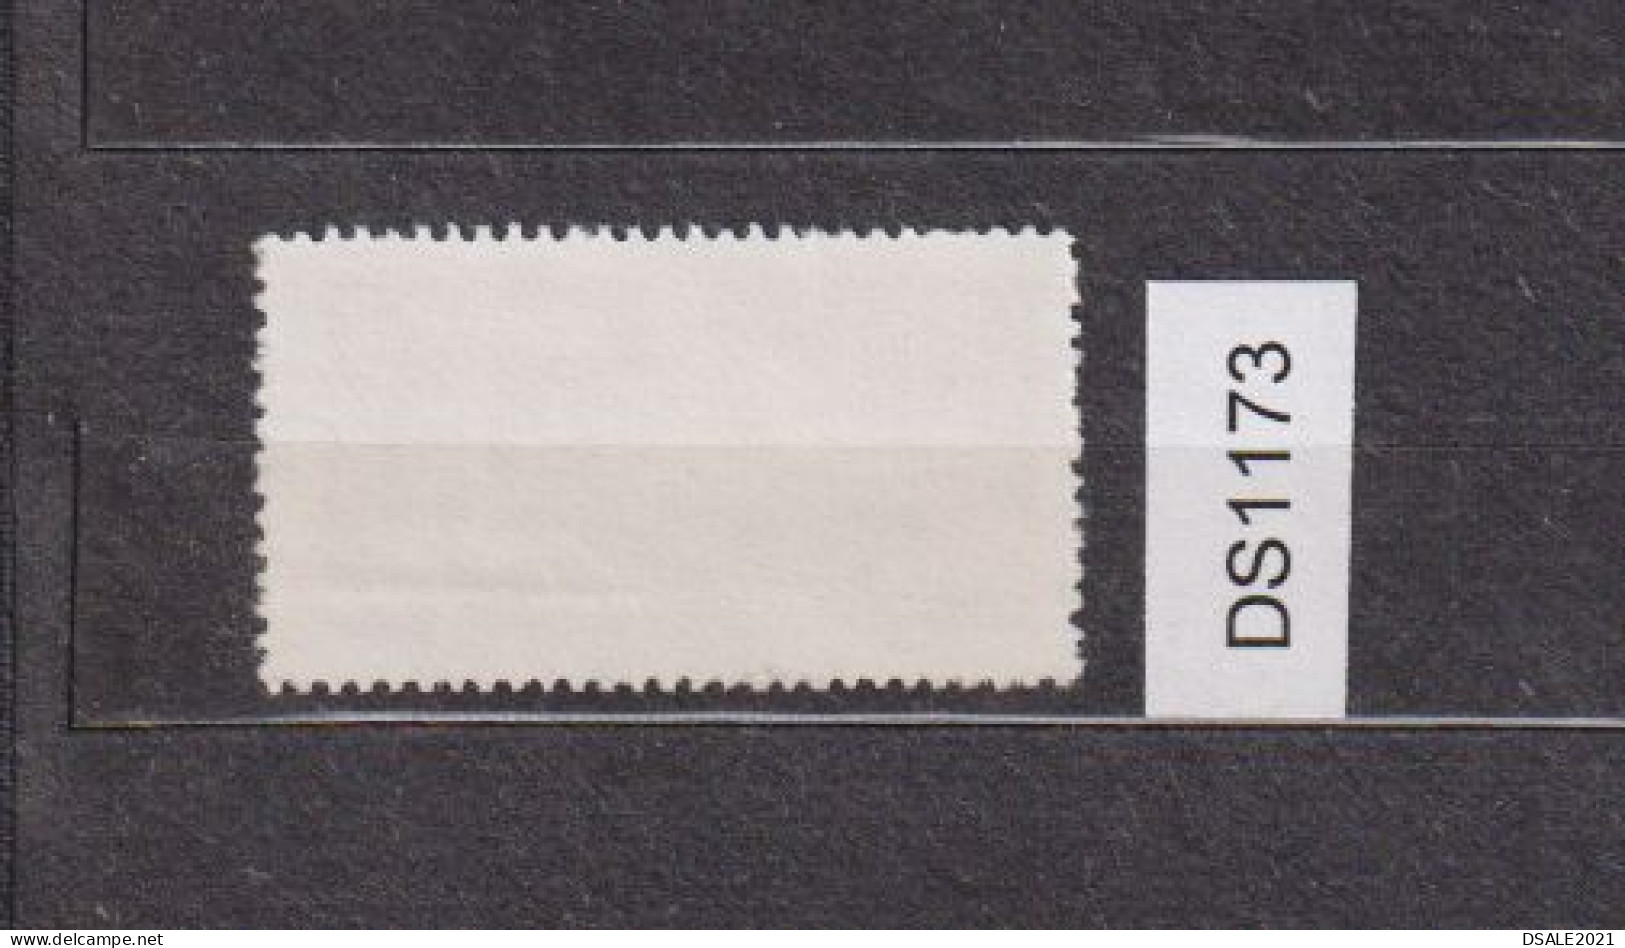 Union Des Automobilistes Bulgares, Union Of Bulgarian Motorists, 1978 Membership Paid Stamp Fiscal Revenue 5Lv. (ds1173) - Dienstzegels